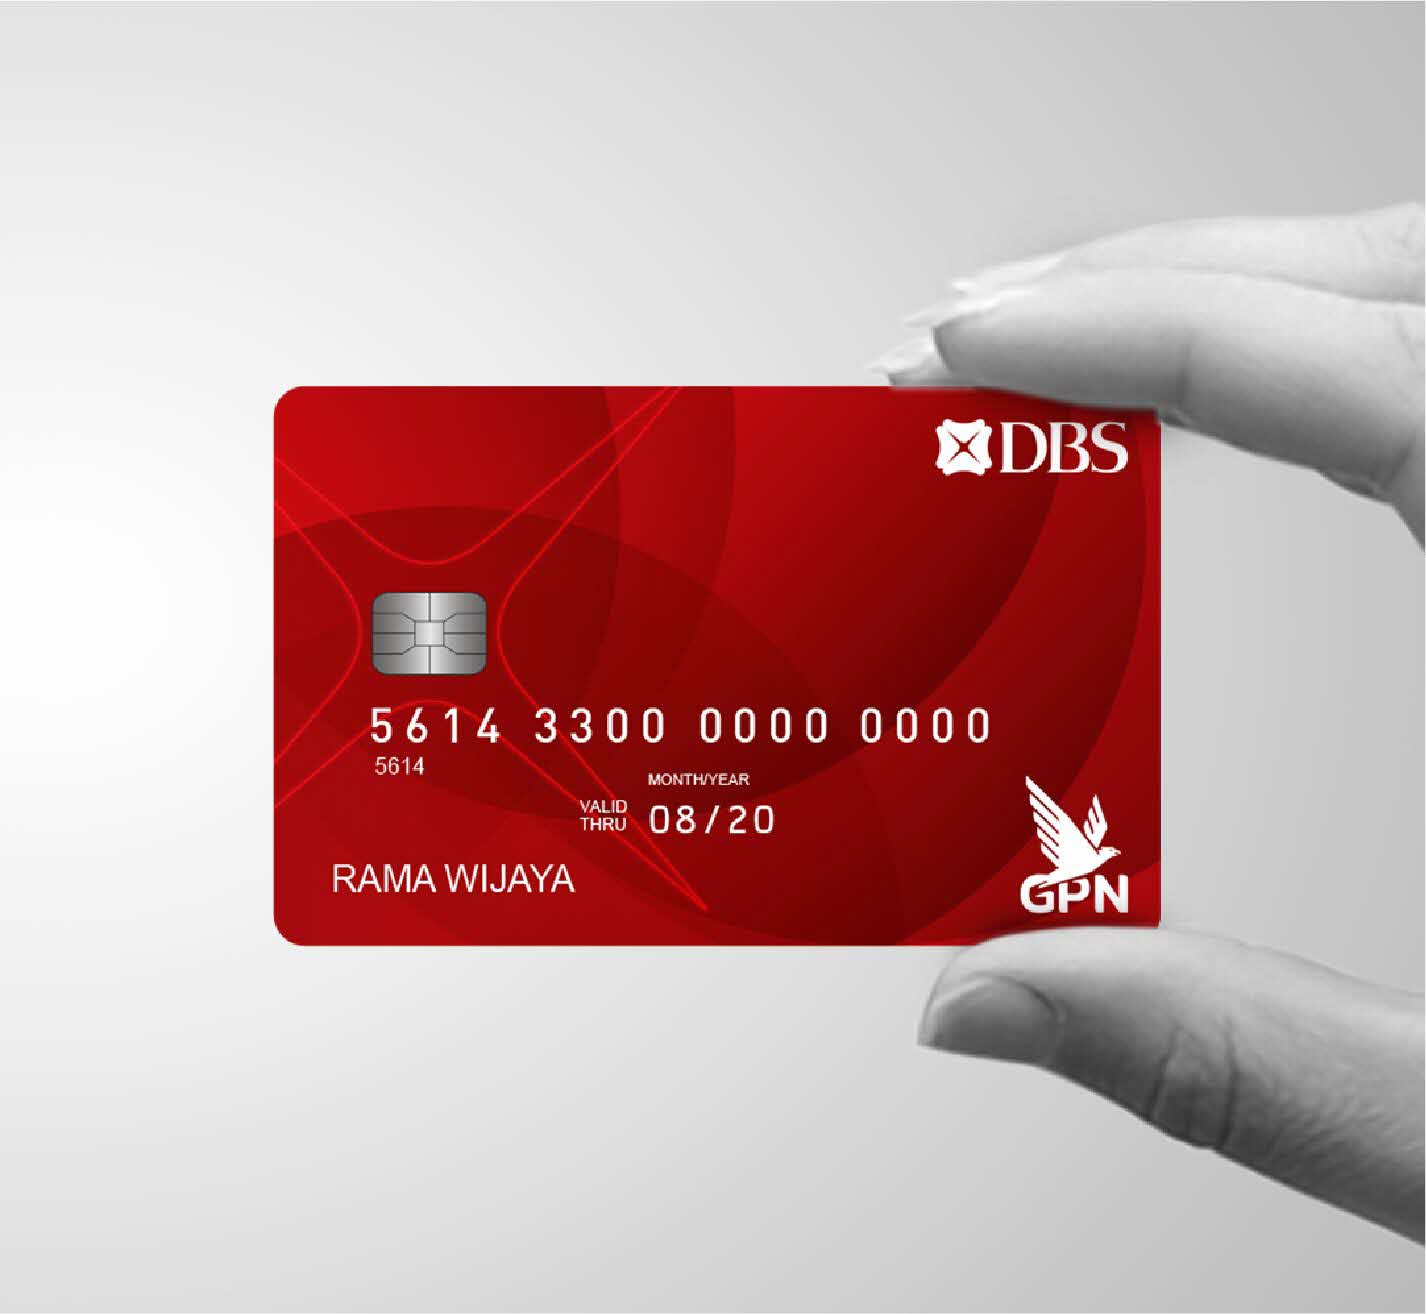 Kartu Debit DBS GPN